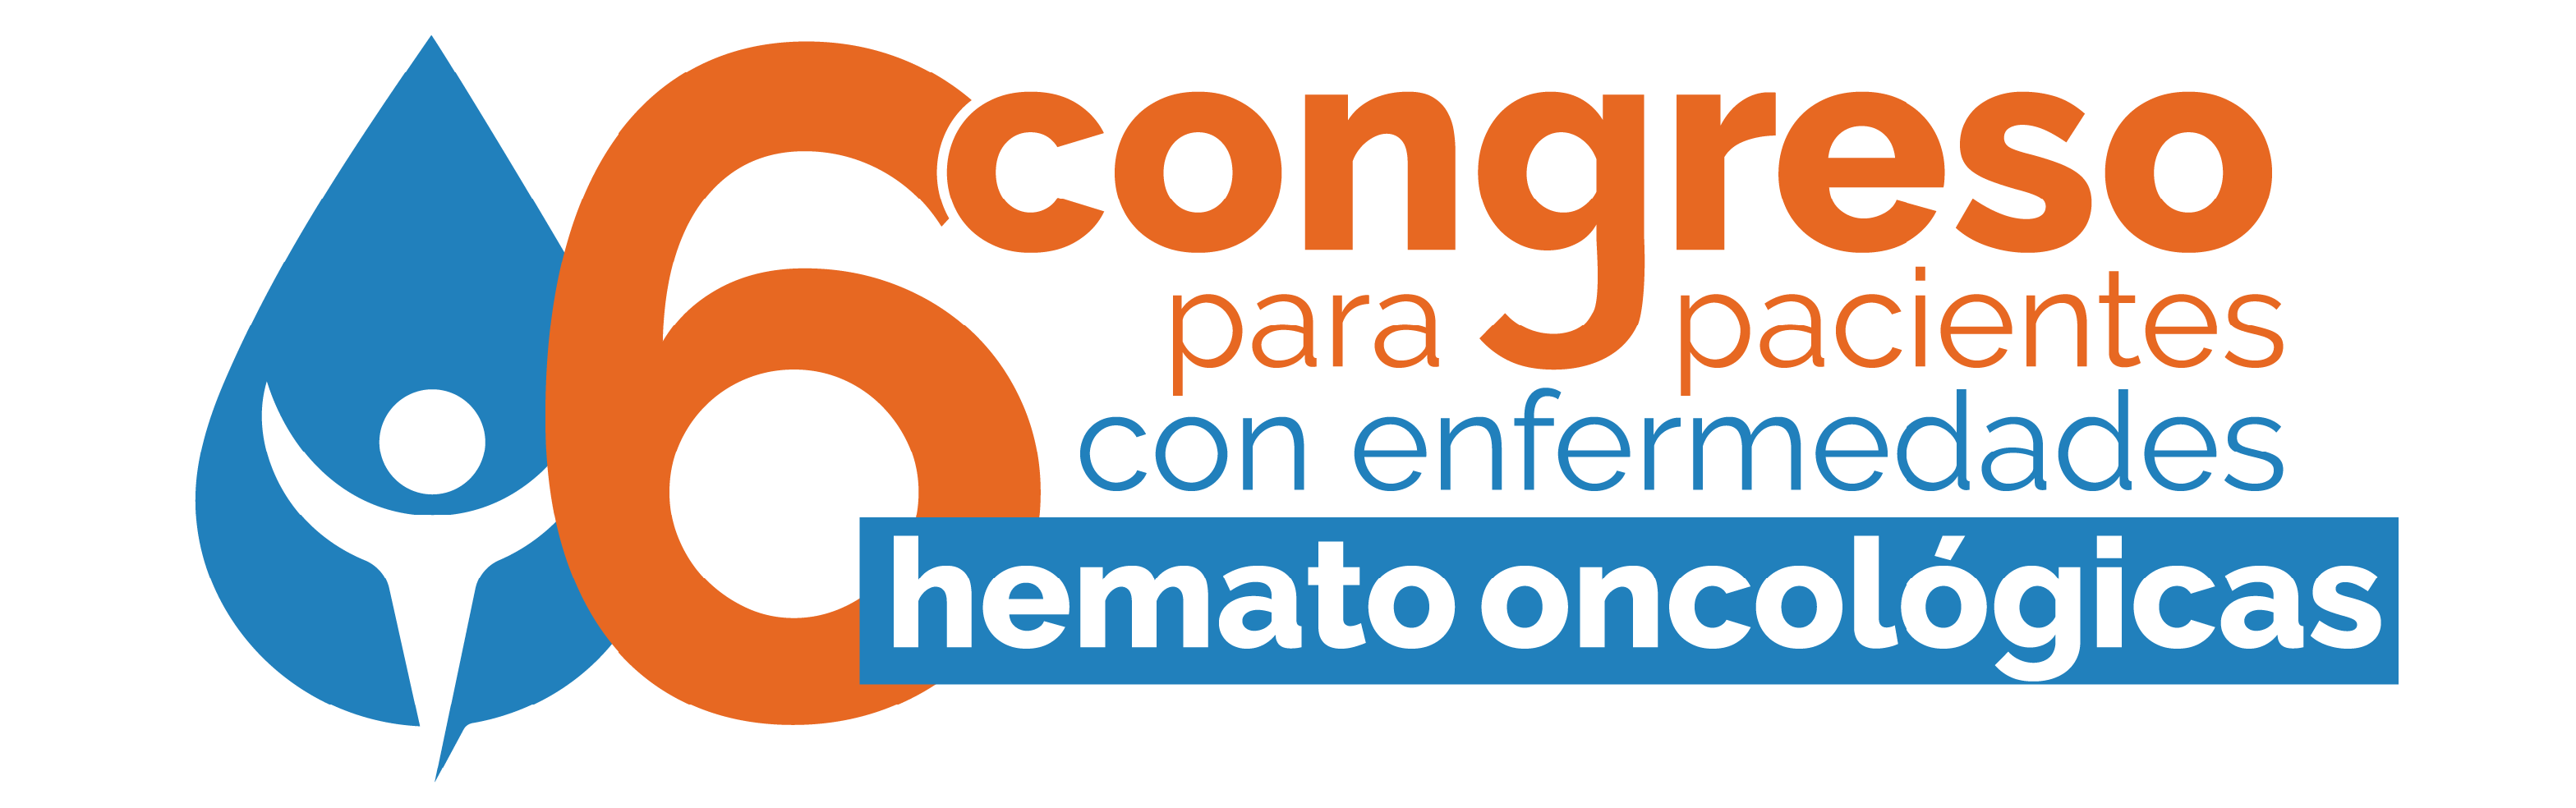 logotipo-6to-congreso